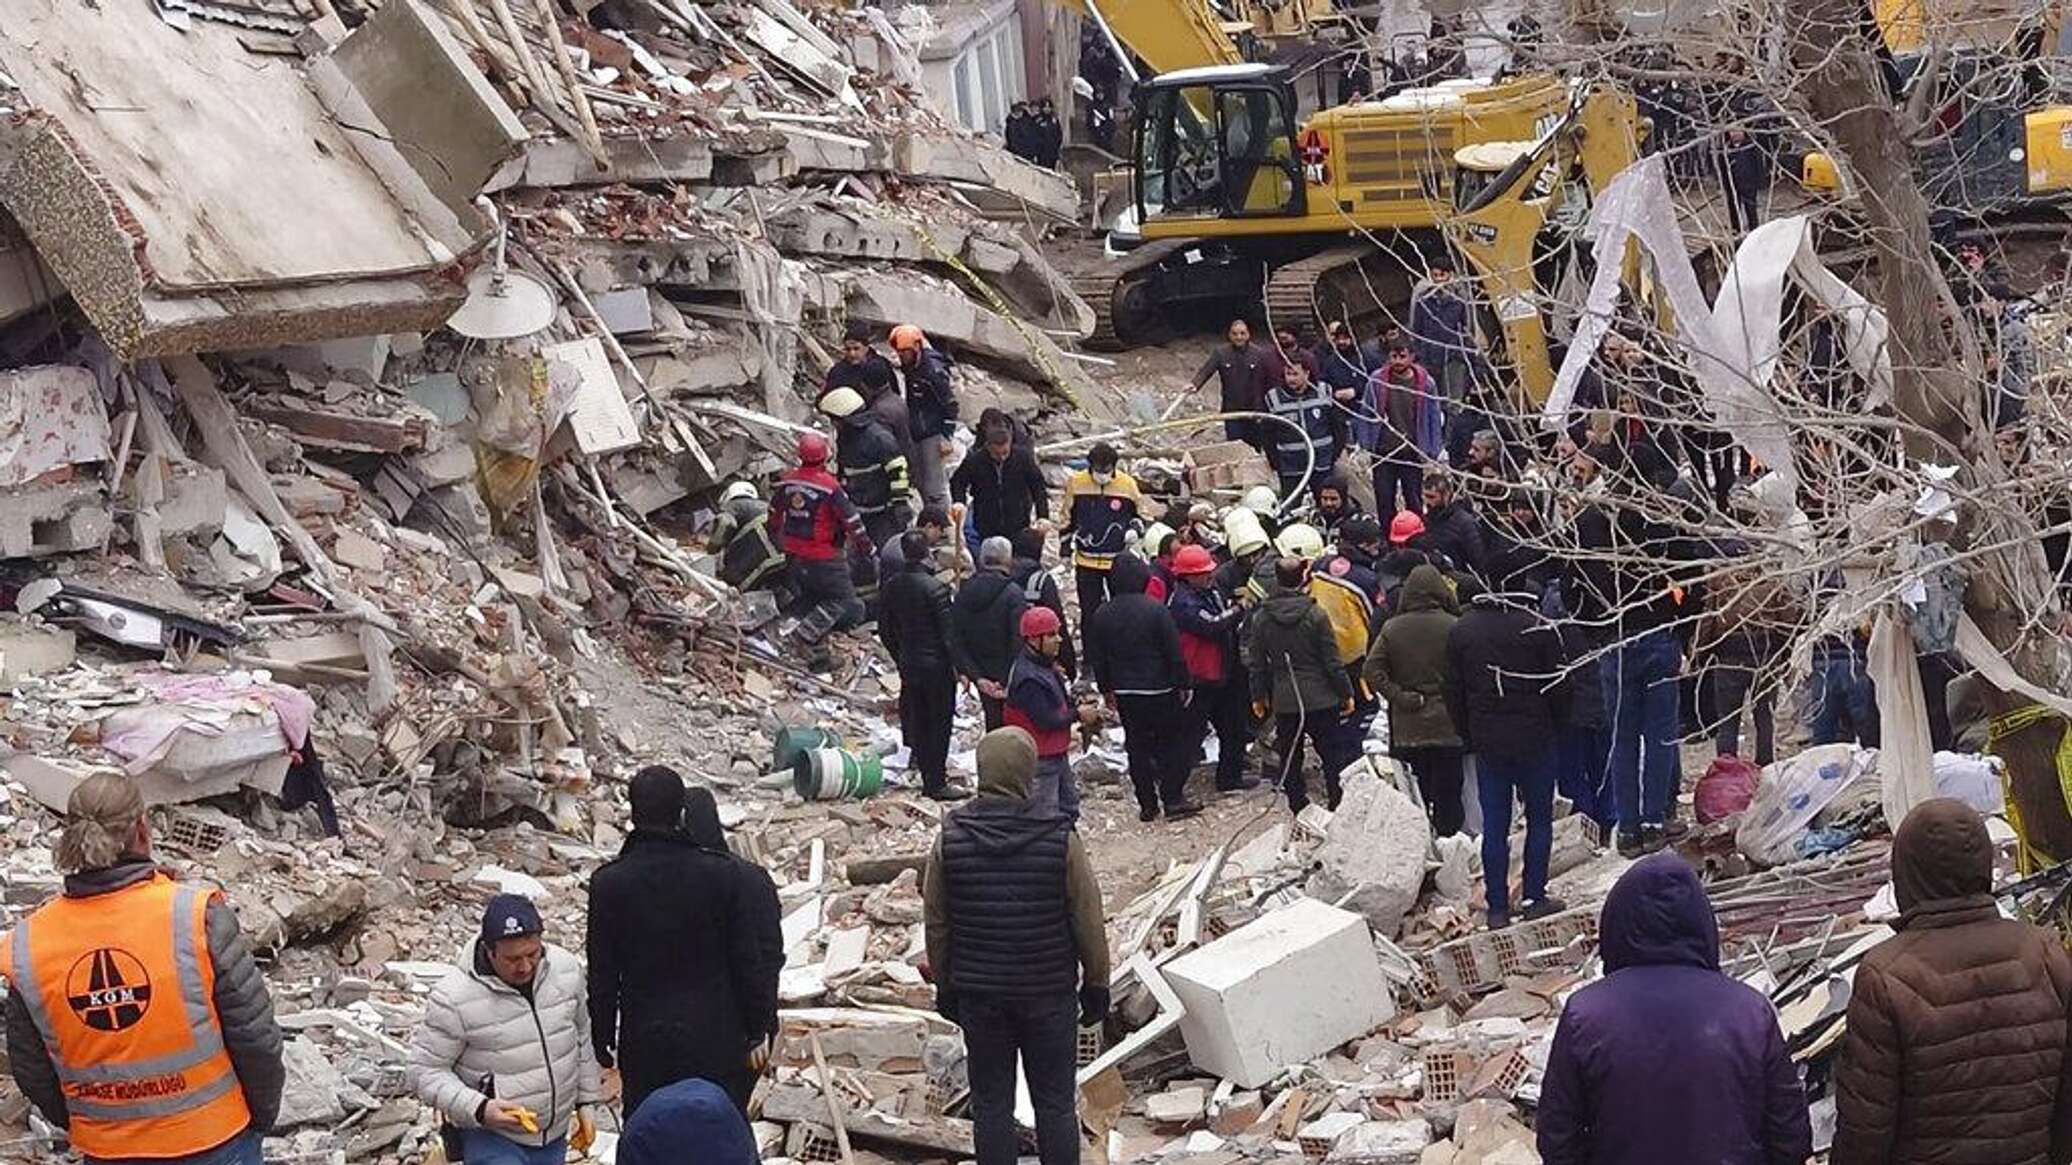 землетрясение в румынии